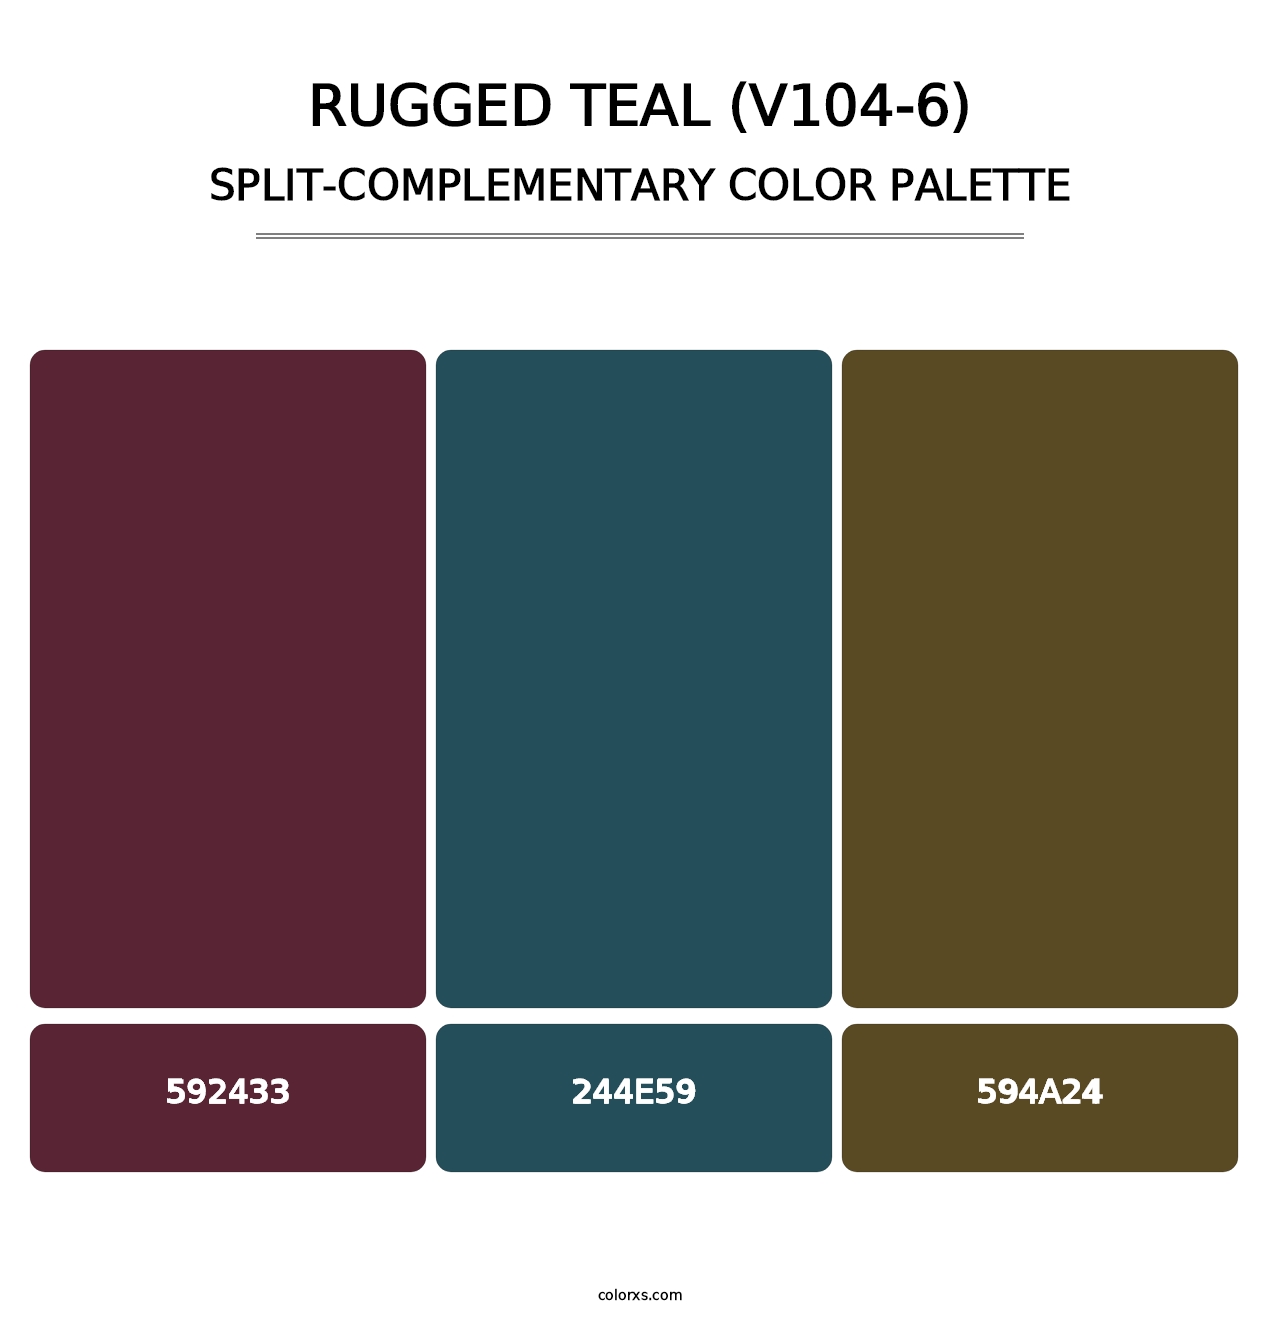 Rugged Teal (V104-6) - Split-Complementary Color Palette